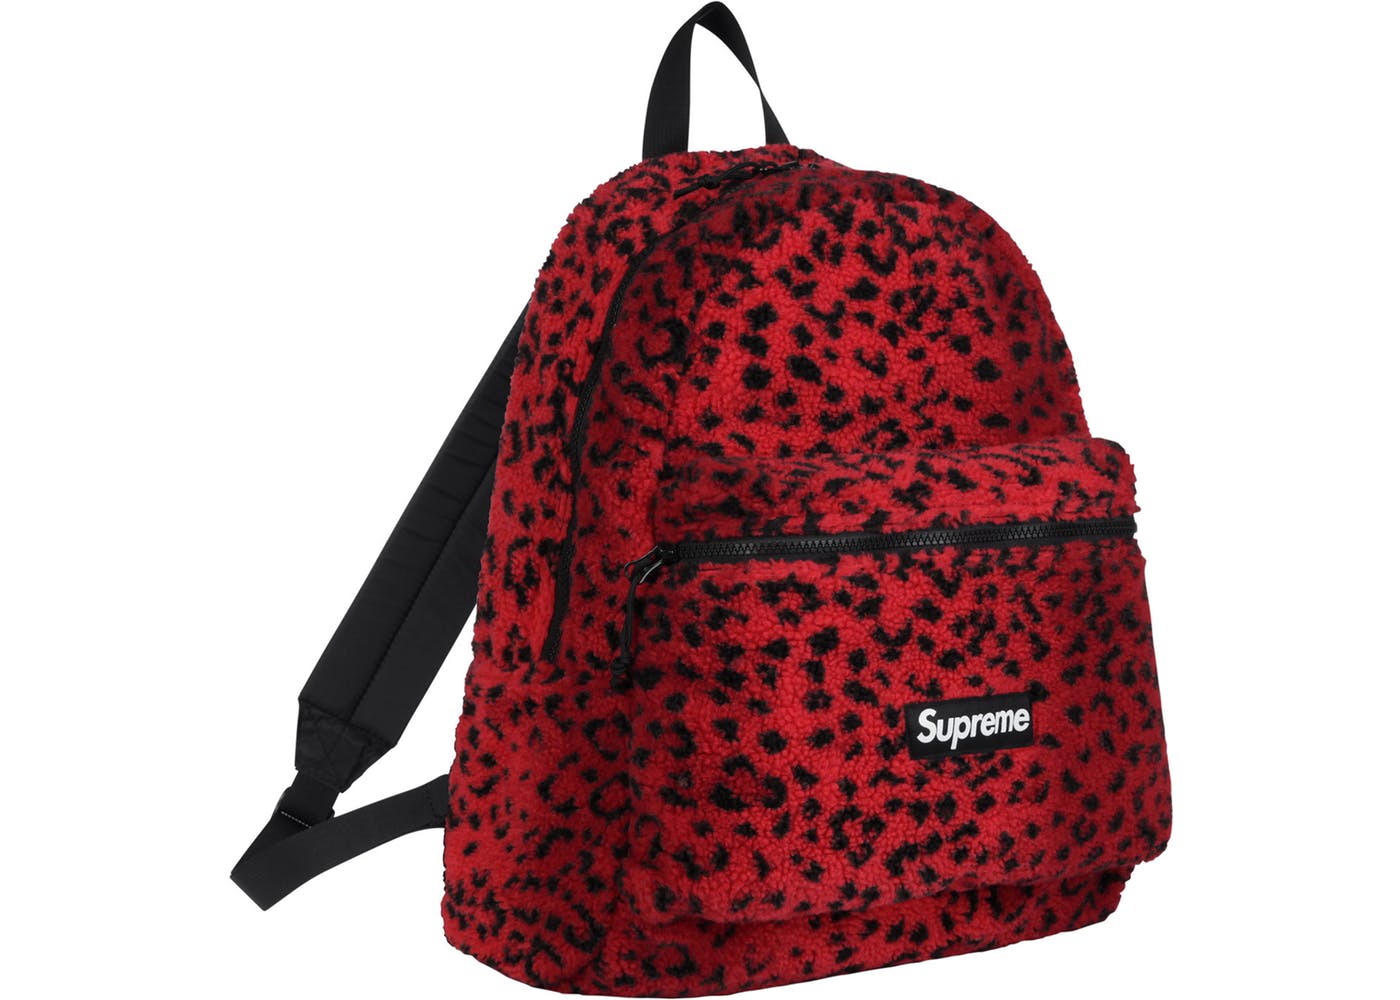 NWT Supreme FW20 Leopard Cheetah Backpack  Red faux fur, Cordura backpack, Supreme  backpack